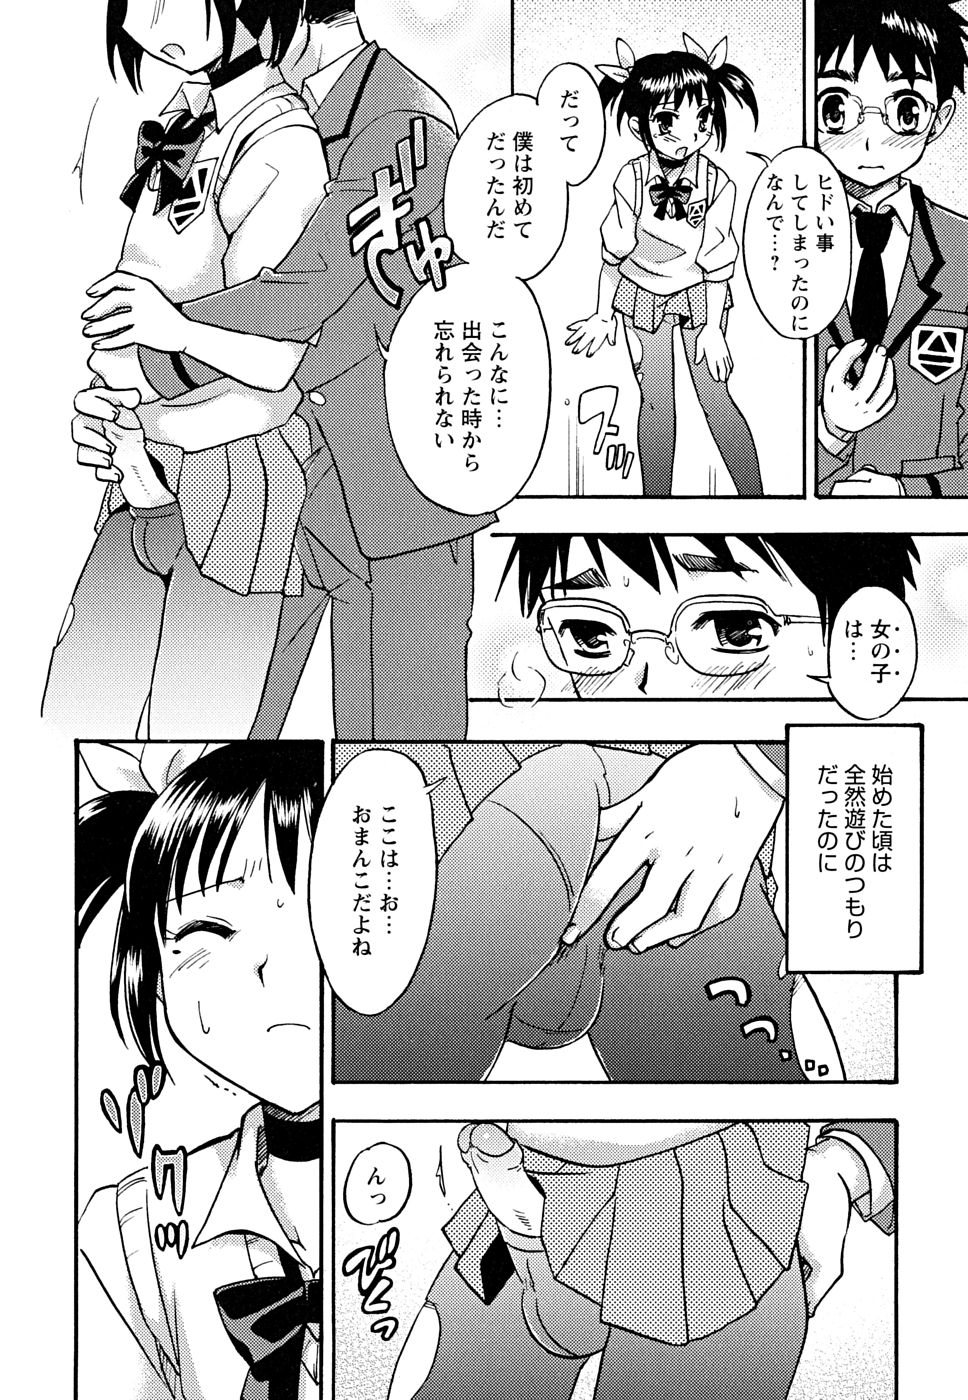 [Anthology] Shounen Shikou 22 - Josou Fantasy page 46 full